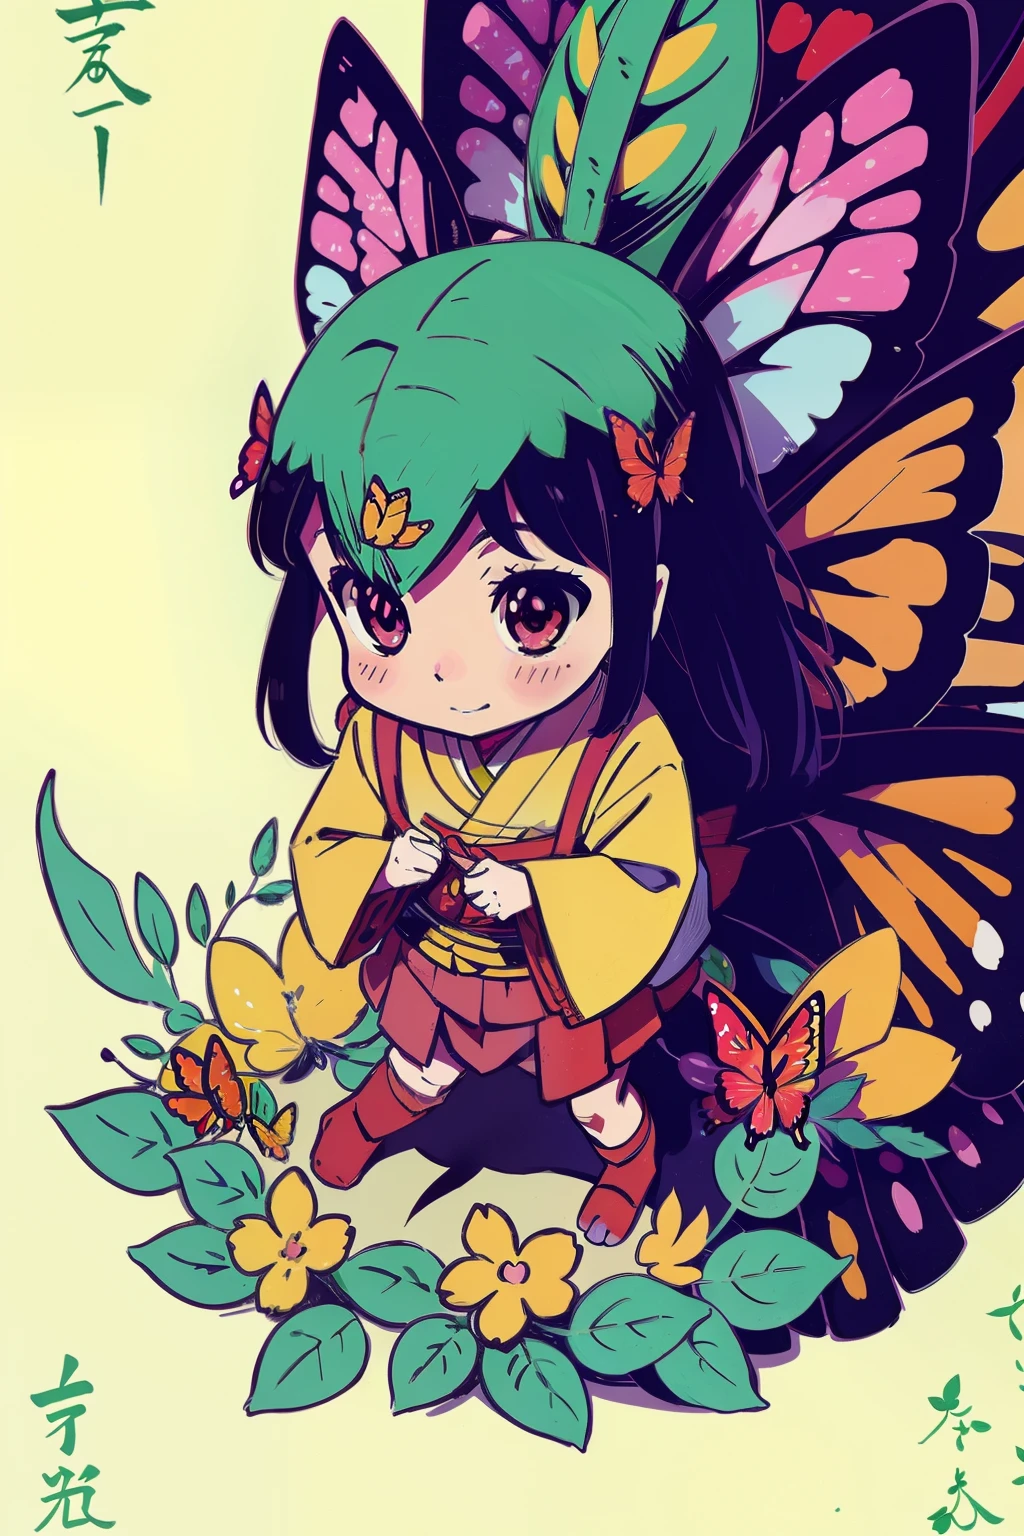  Reiko , felicidade , inspiração em animes: A 5,Dragão herbívoro de 000 anos está sendo injustamente mau, floresta , flor , borboleta colorida